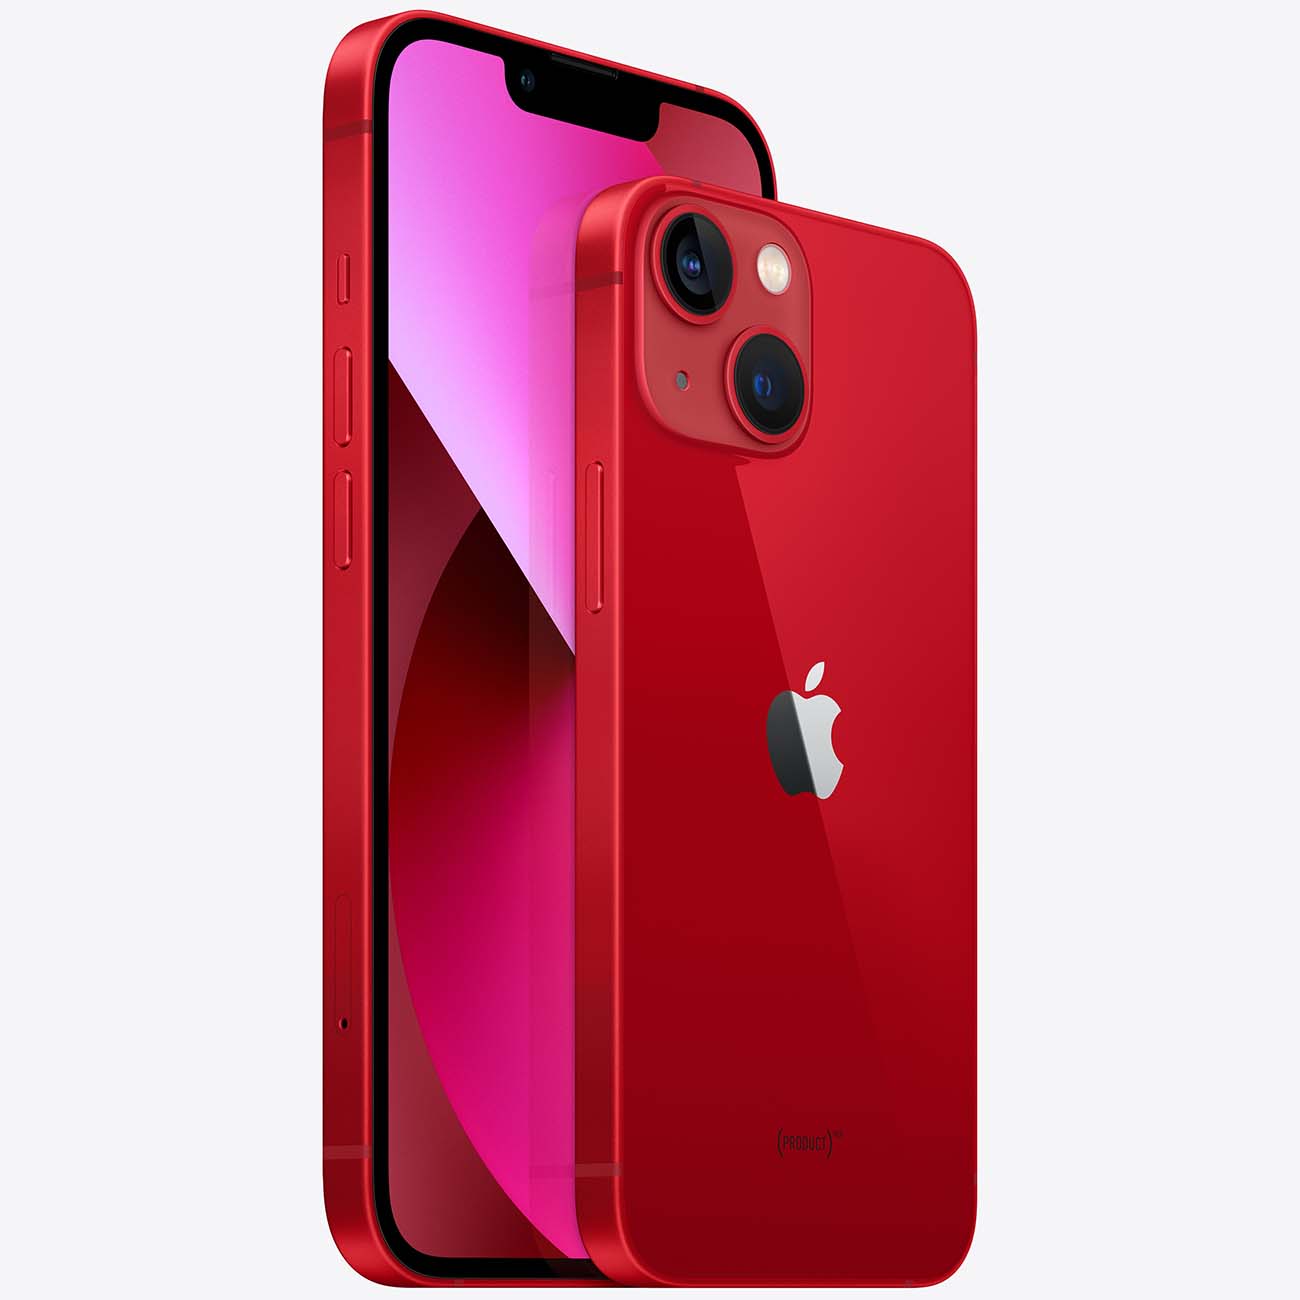 Купить смартфон apple iphone 13 mini 256gb (product) red Apple iPhone 13 mini в официальном магазине Apple, Samsung, Xiaomi. iPixel.ru Купить, заказ, кредит, рассрочка, отзывы,  характеристики, цена,  фотографии, в подарок.